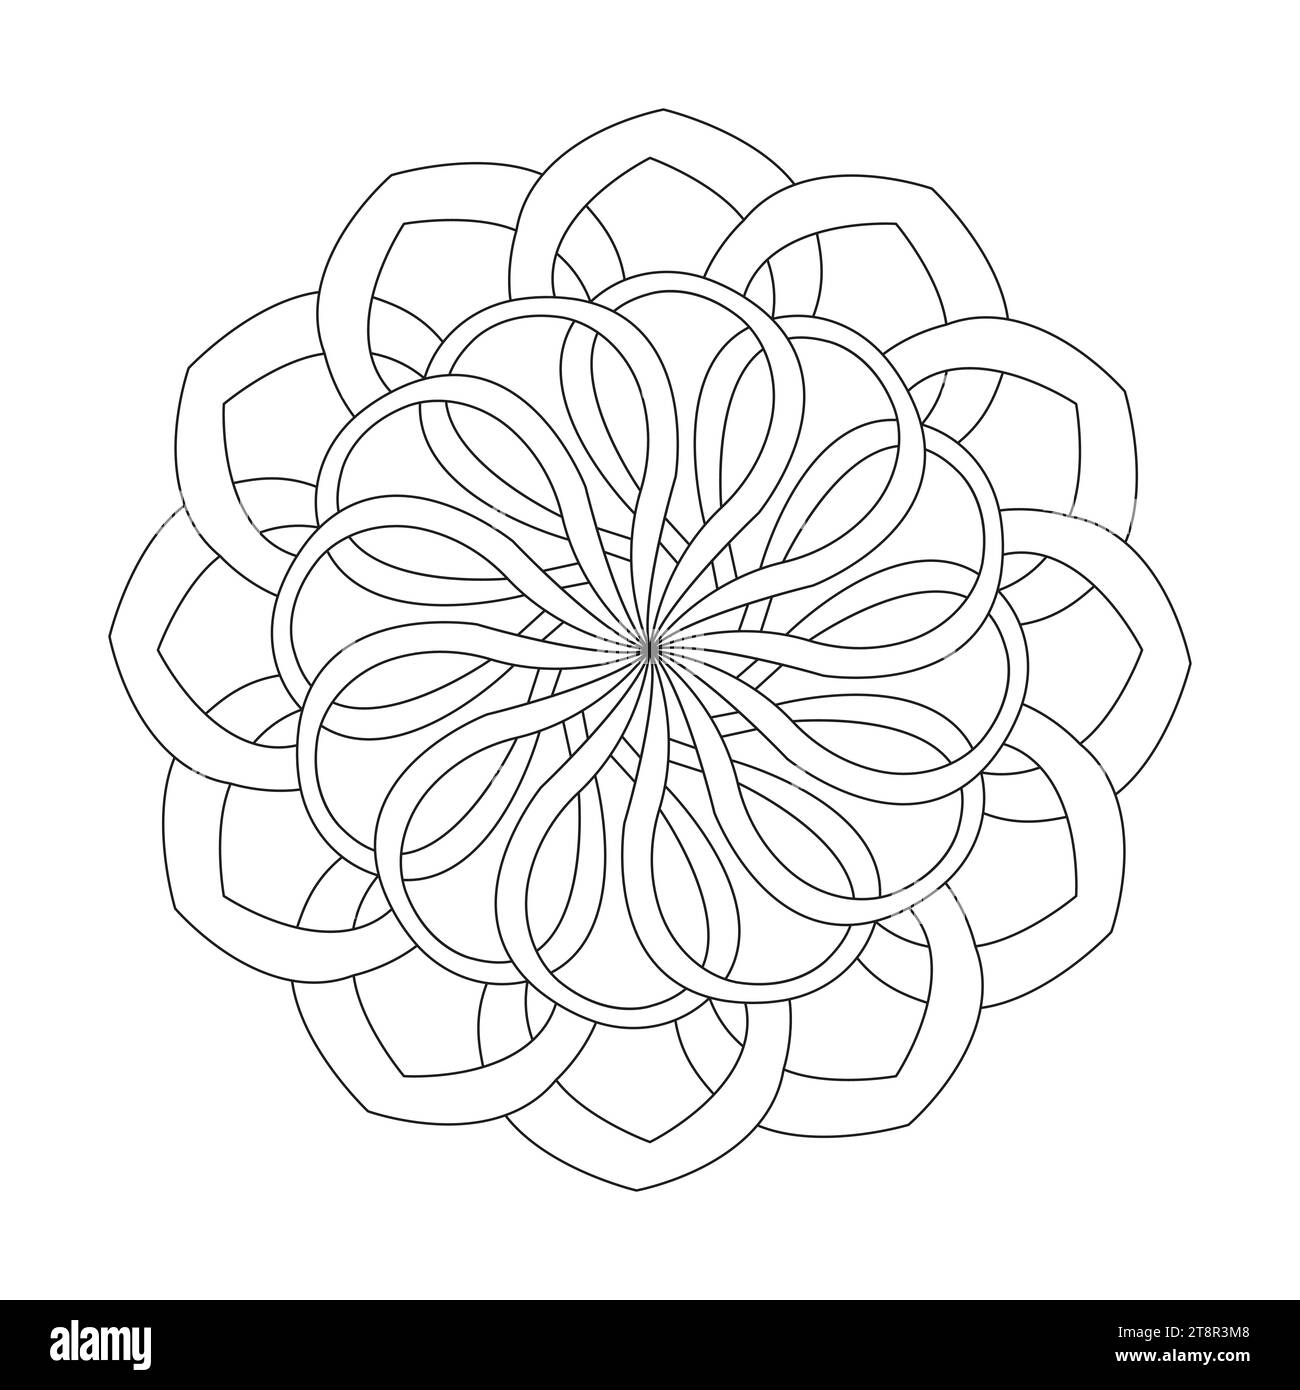 Keltisches Mandala energetische Verzierungen, die Buchseite für das kdp-Buchinnere ausmalen. Friedliche Blütenblätter, Fähigkeit zum Entspannen, Gehirnerlebnisse, harmonisch Stock Vektor